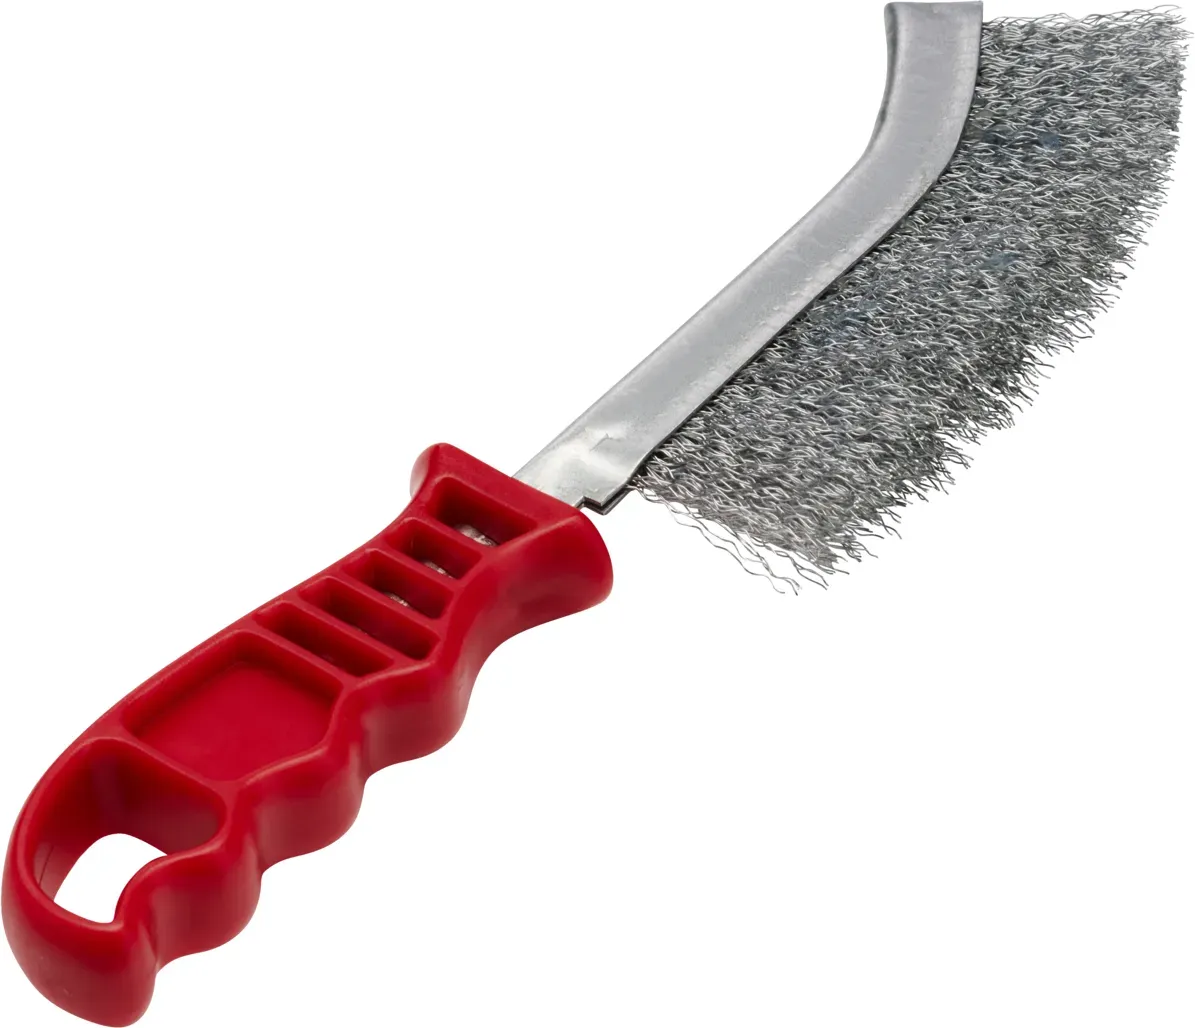 RHODIUS Stahldraht Handbürste UHBW - Premium Werkzeug für Reinigung und Oberflächenbearbeitung - Fei